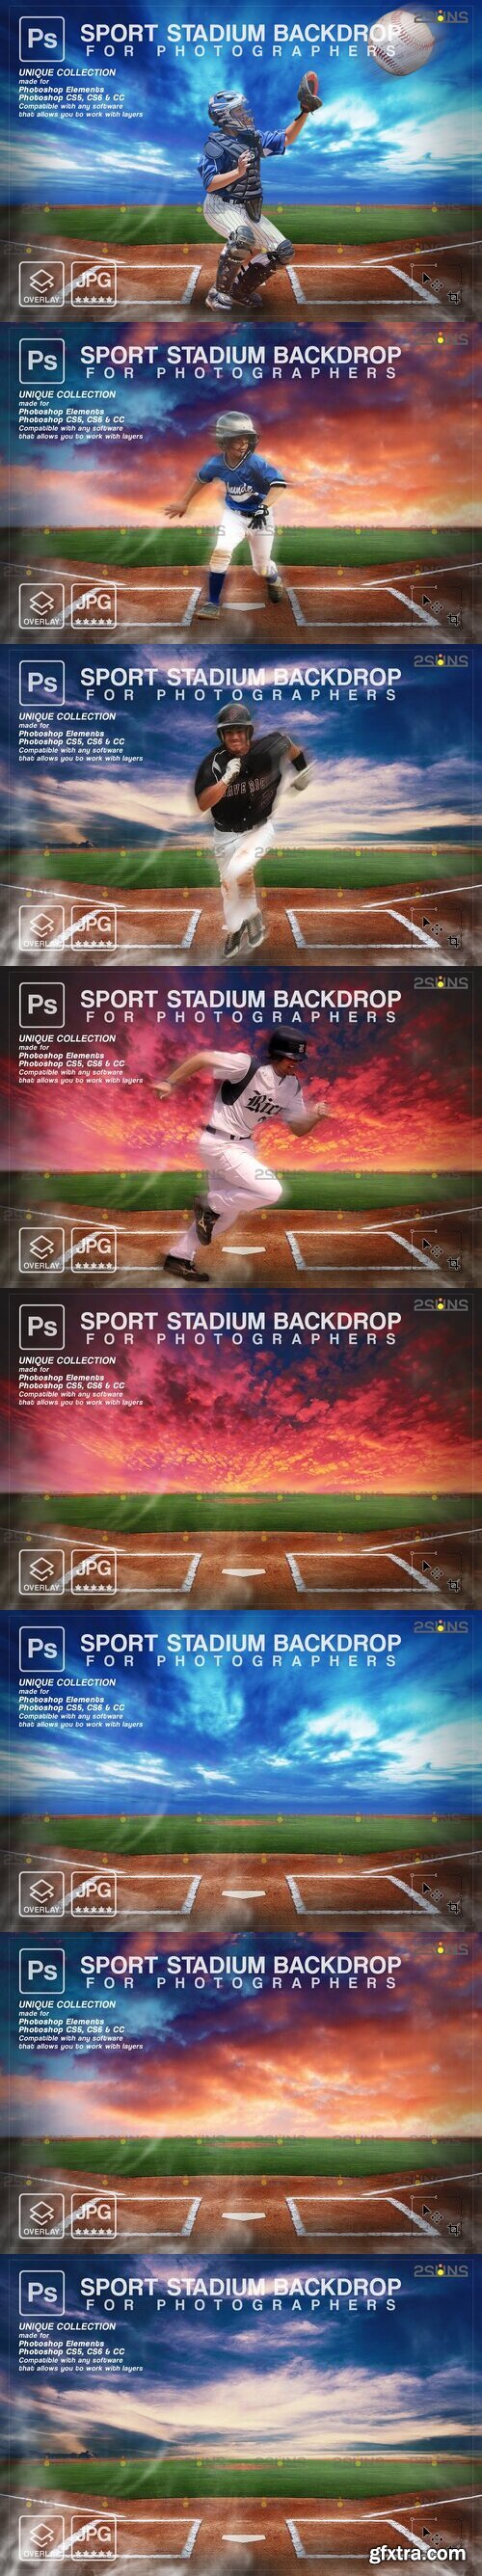 Backdrop Sports Digital vol3